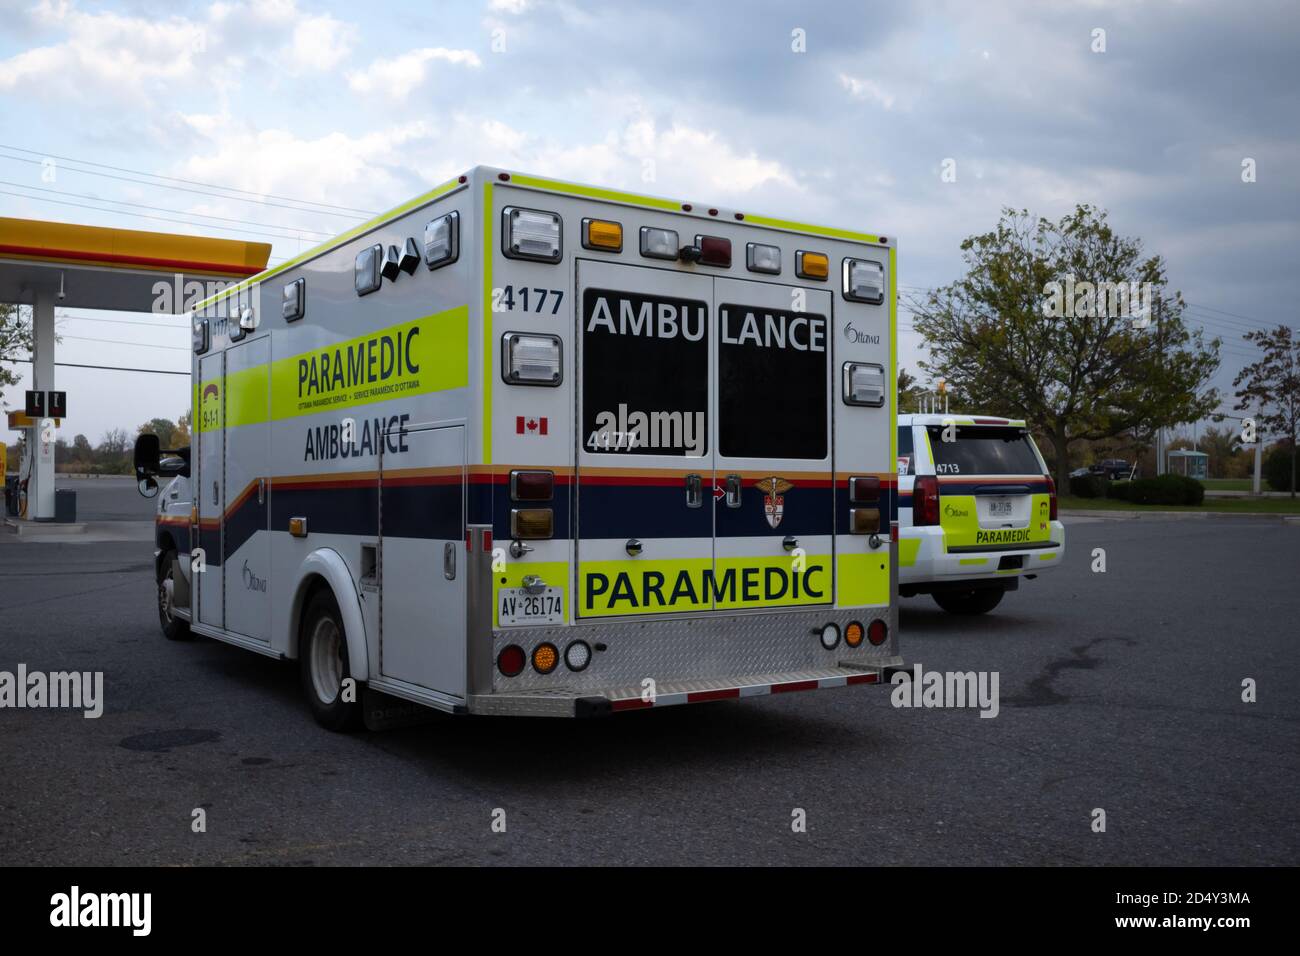 Ottawa, Ontario, Canada - 10 ottobre 2020: Un'ambulanza e un veicolo di servizio gestito dal servizio paramedico di Ottawa sono parcheggiati presso una stazione di servizio. Foto Stock